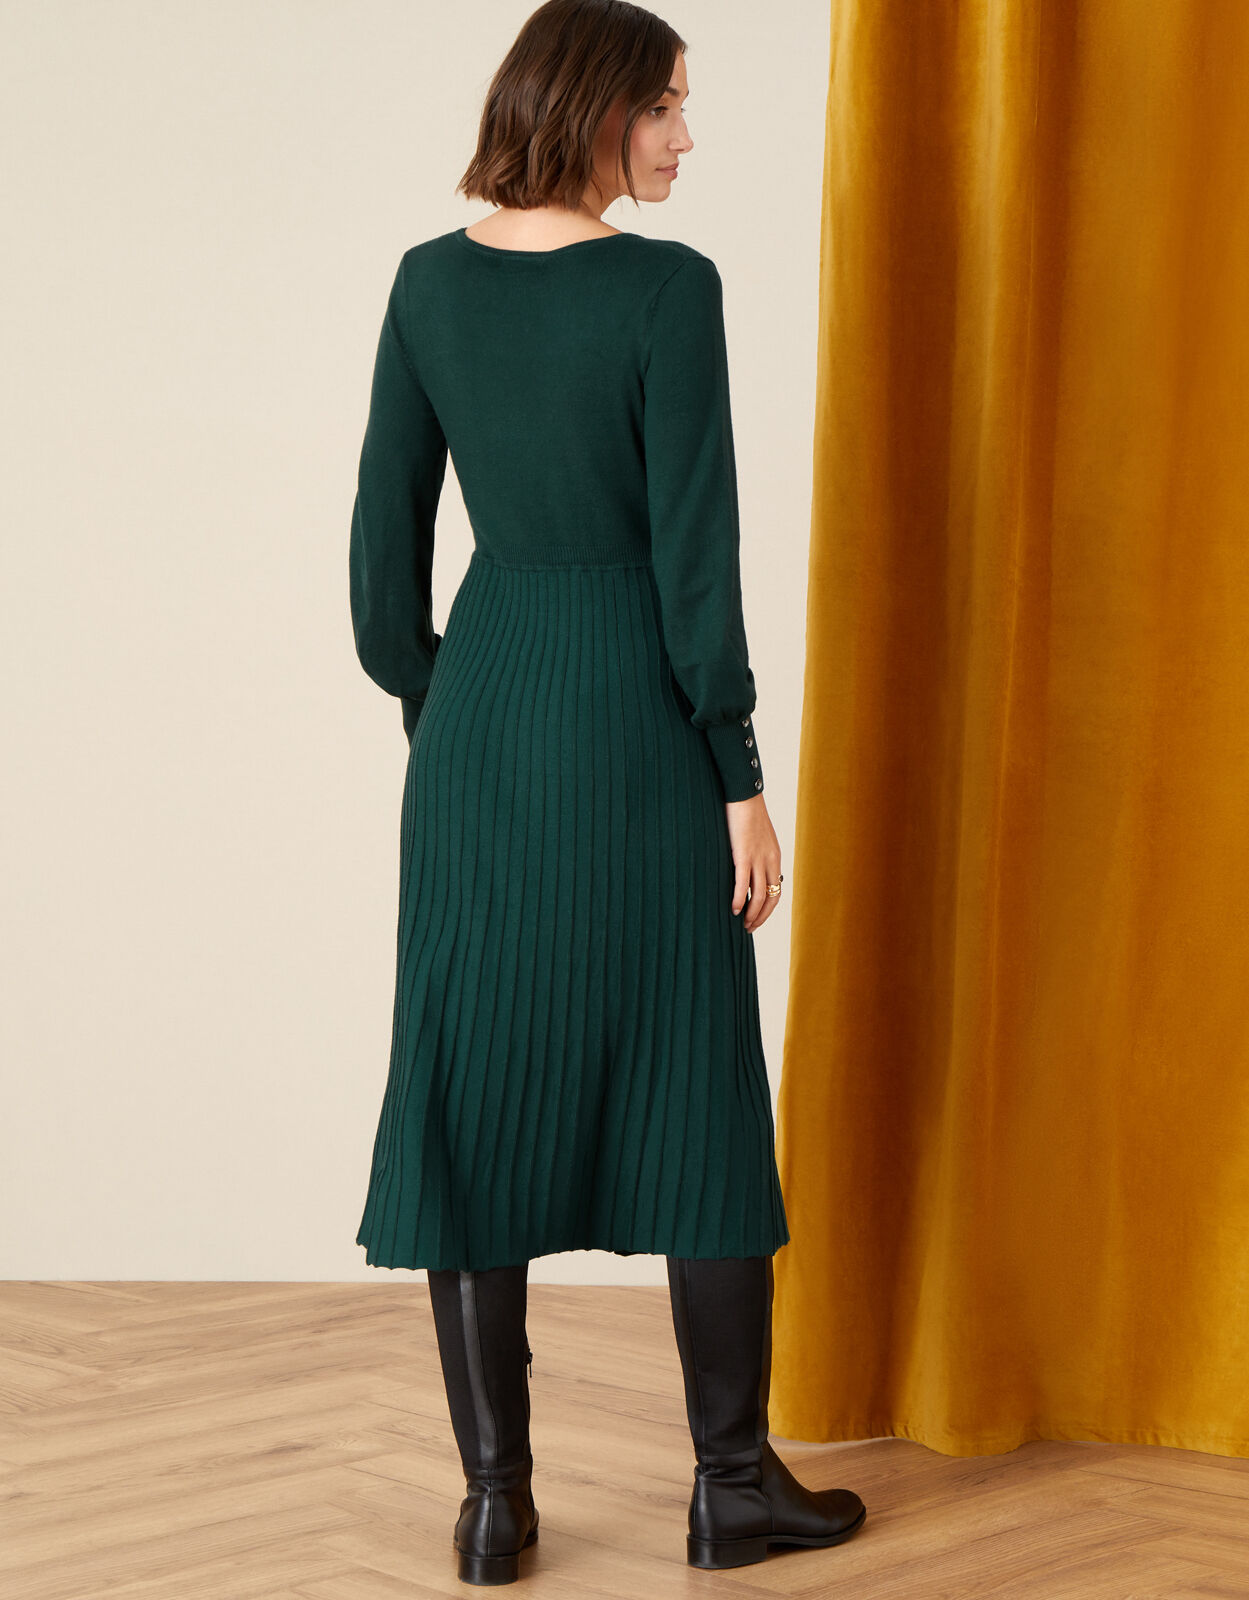 Square Neck Midi Dress Green | Casual ...